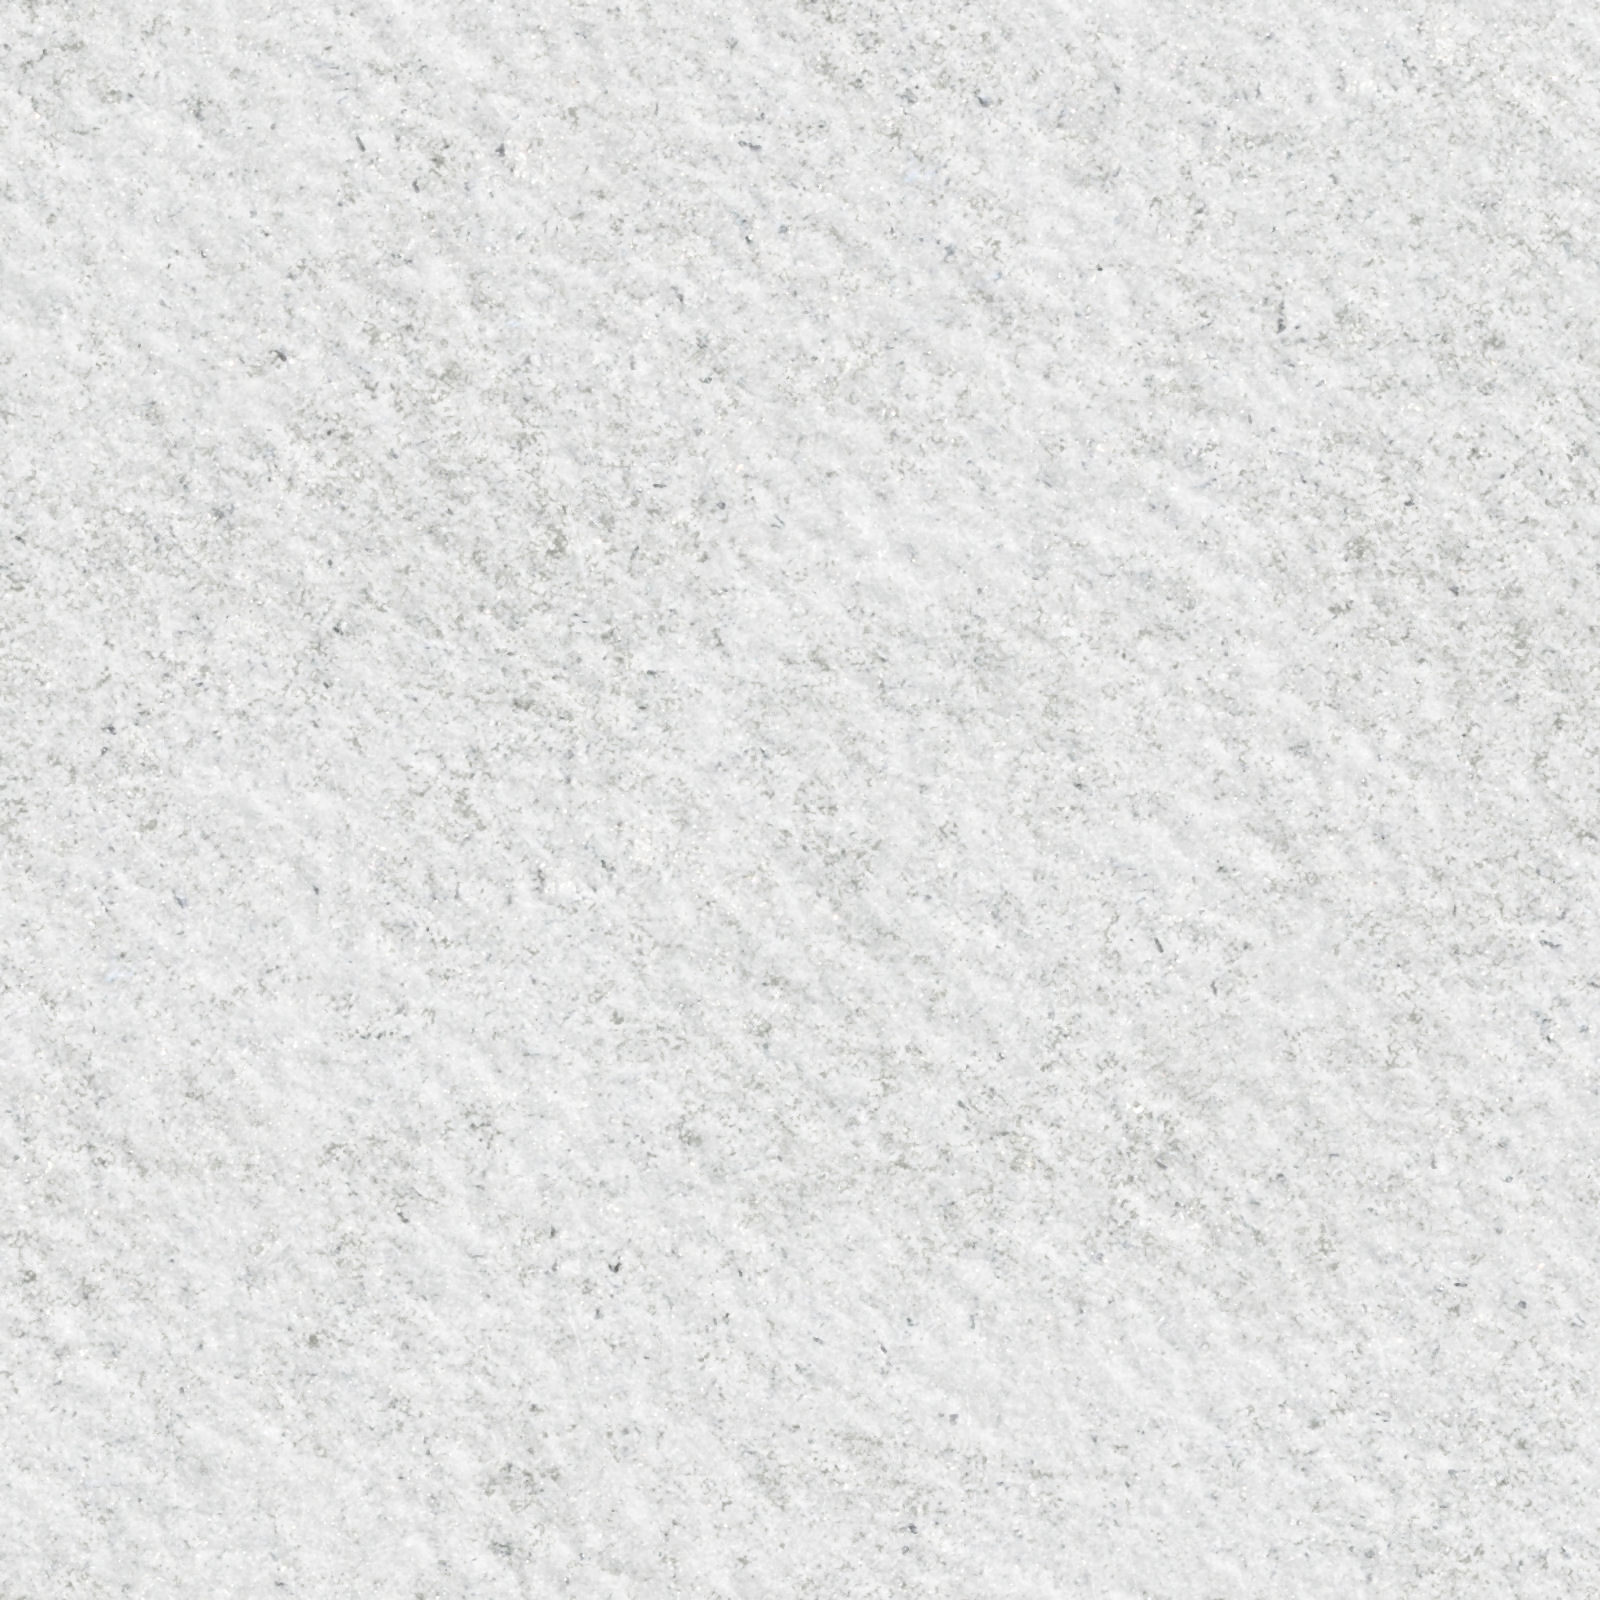 снег, текстура снега, снежная текстура, скачать фото, snow texture background